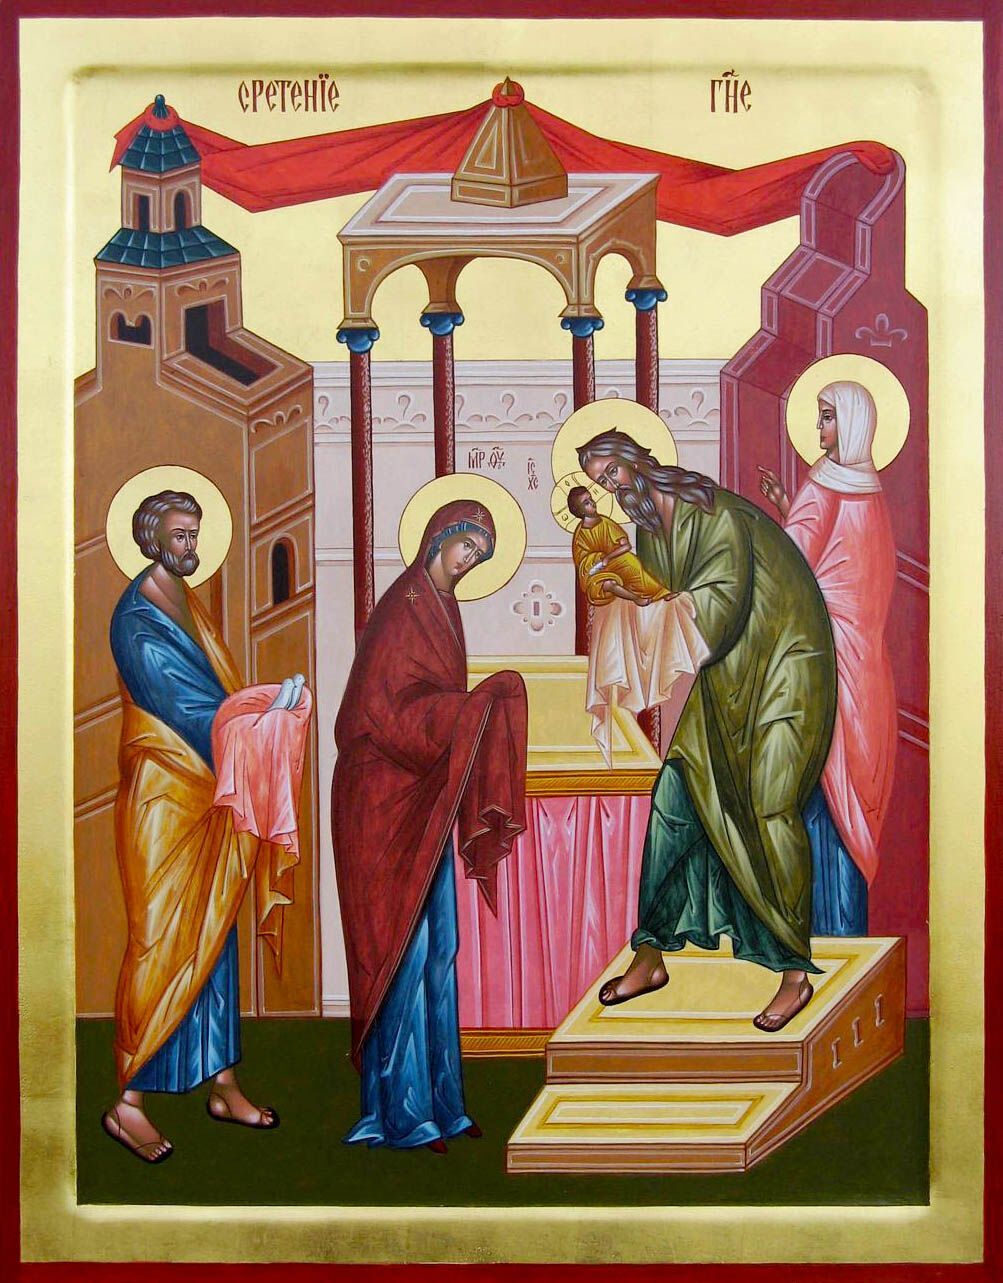 Сретение посвящено принесению младенца Иисуса Христа в храм Иерусалима на 40-й день после Рождества